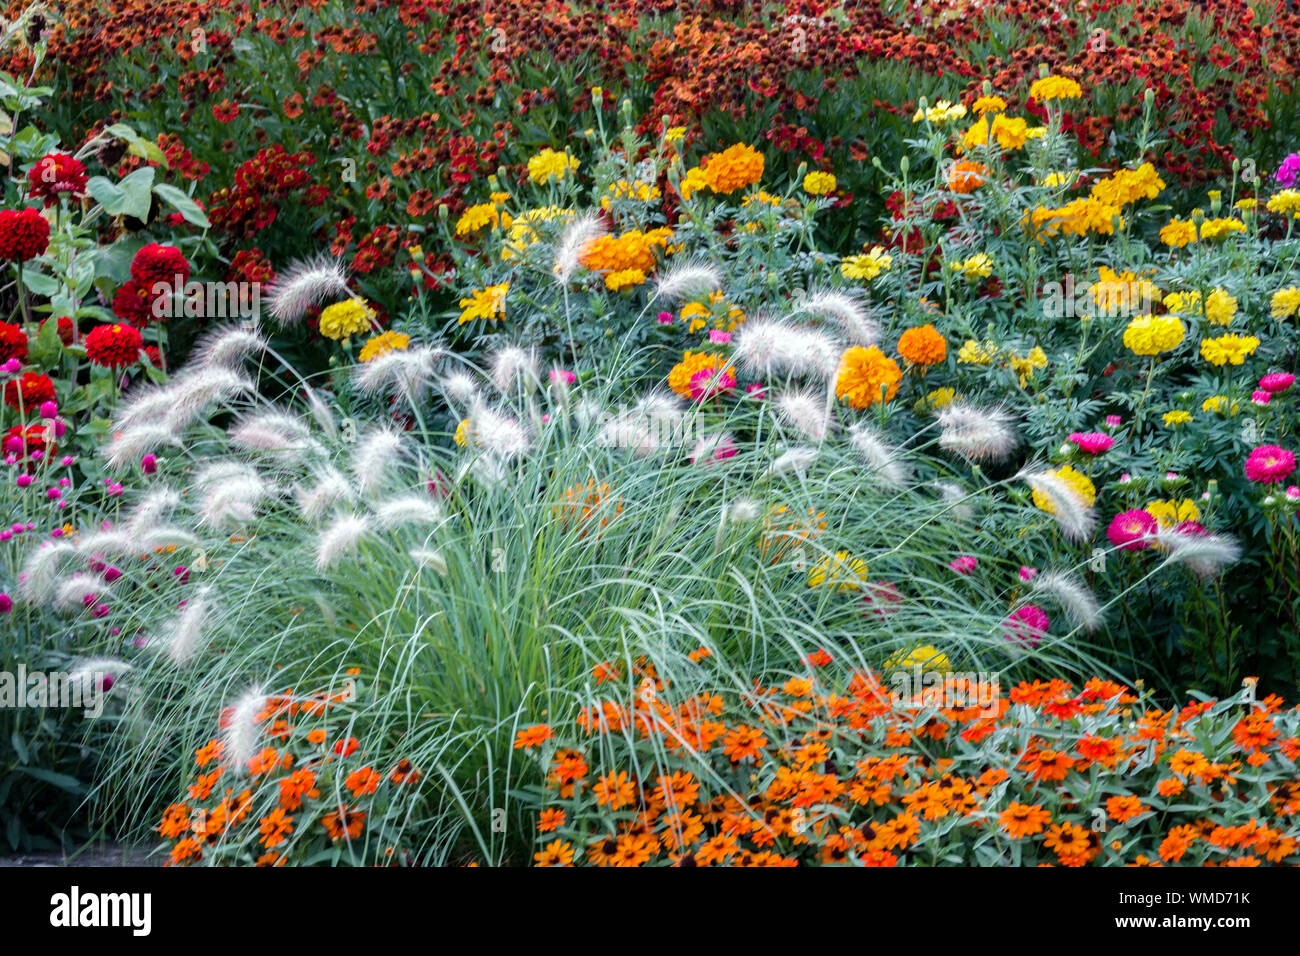 Belle bordure de jardin, fleurs colorées, plantes annuelles et vivaces mélangées dans un parterre de fleurs d'été, Pennisetum, Zinnias, Sneezeweeds Banque D'Images